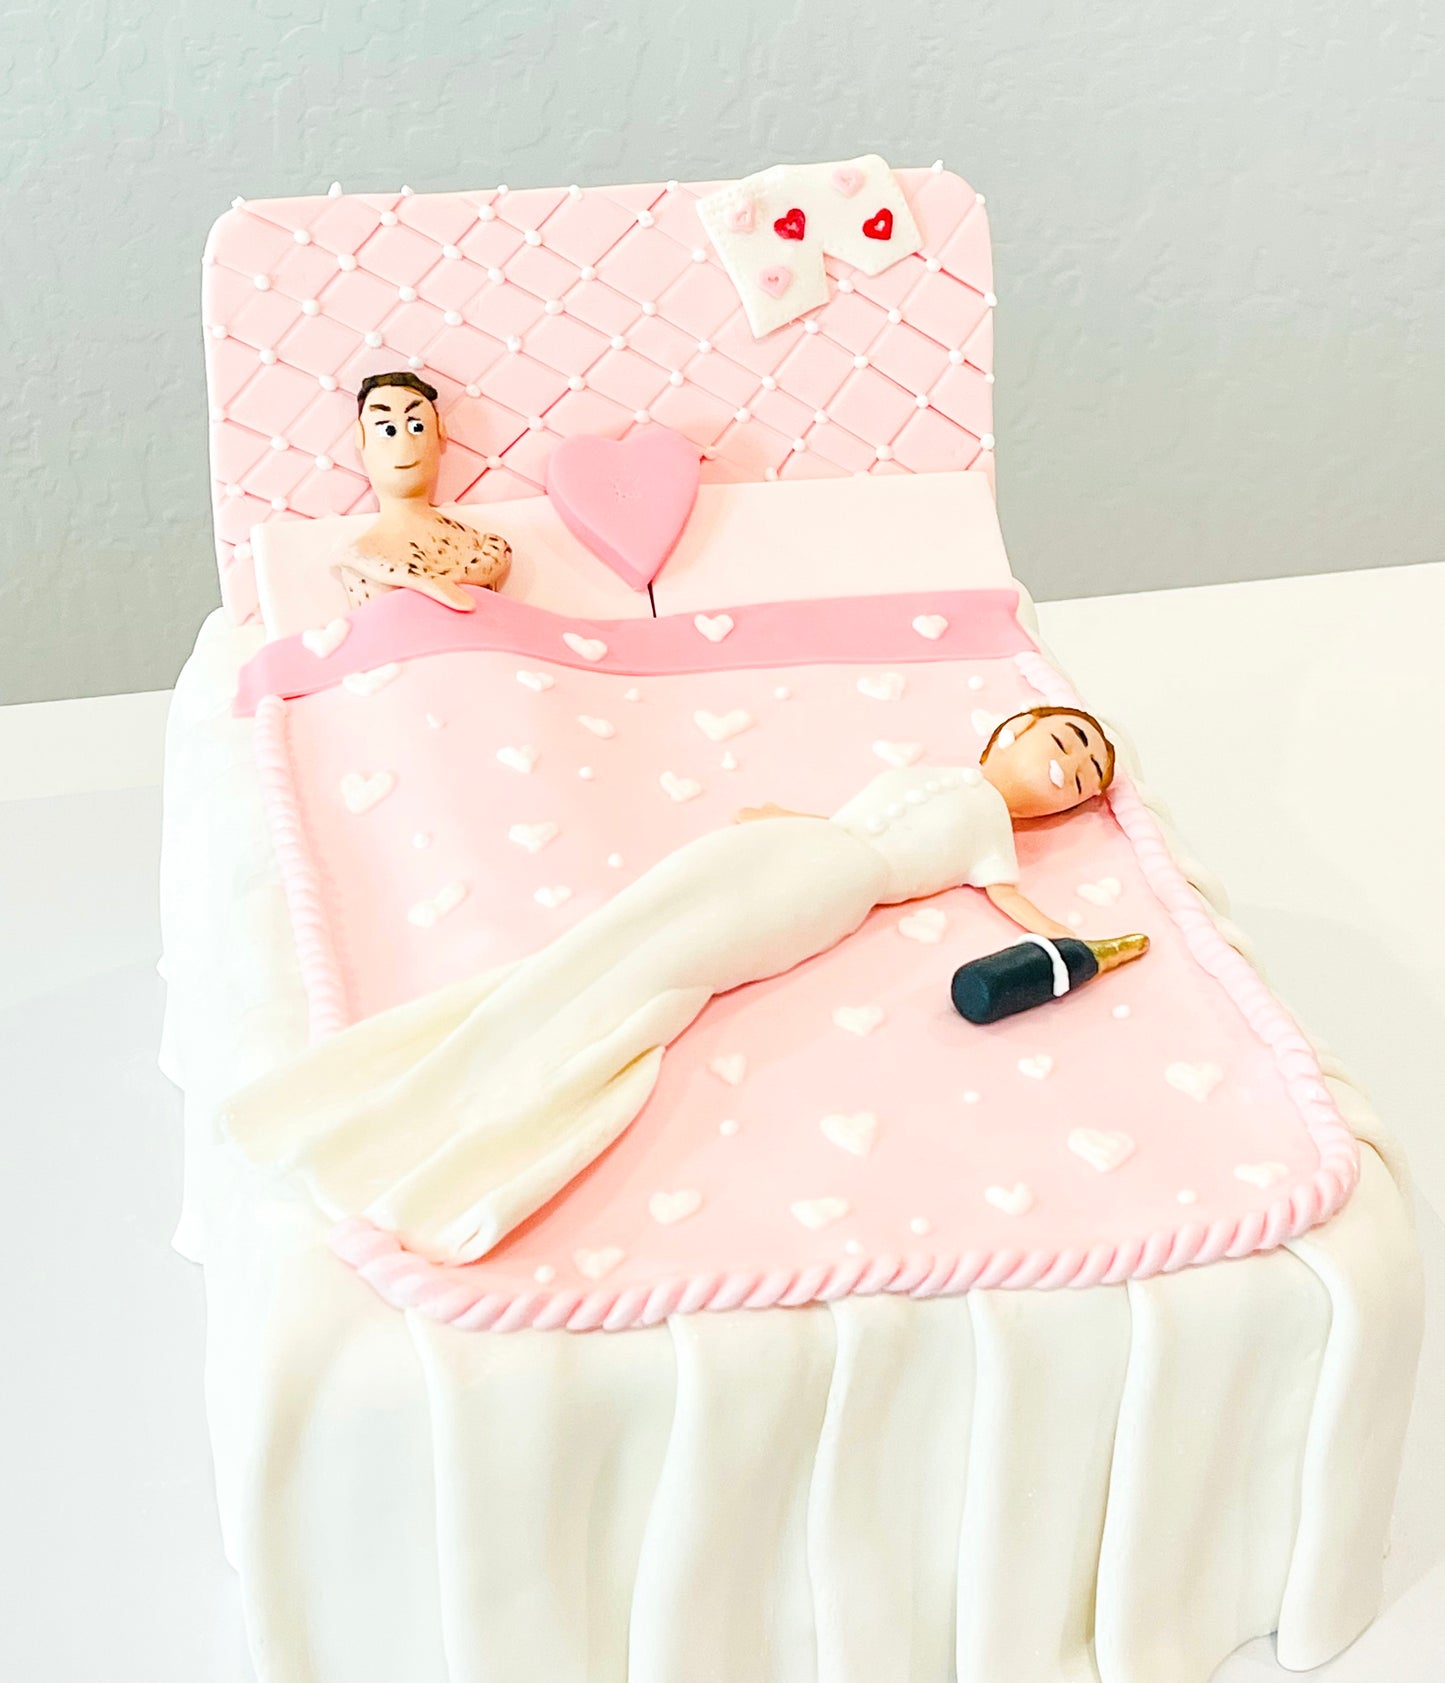 Bachelorette Cake